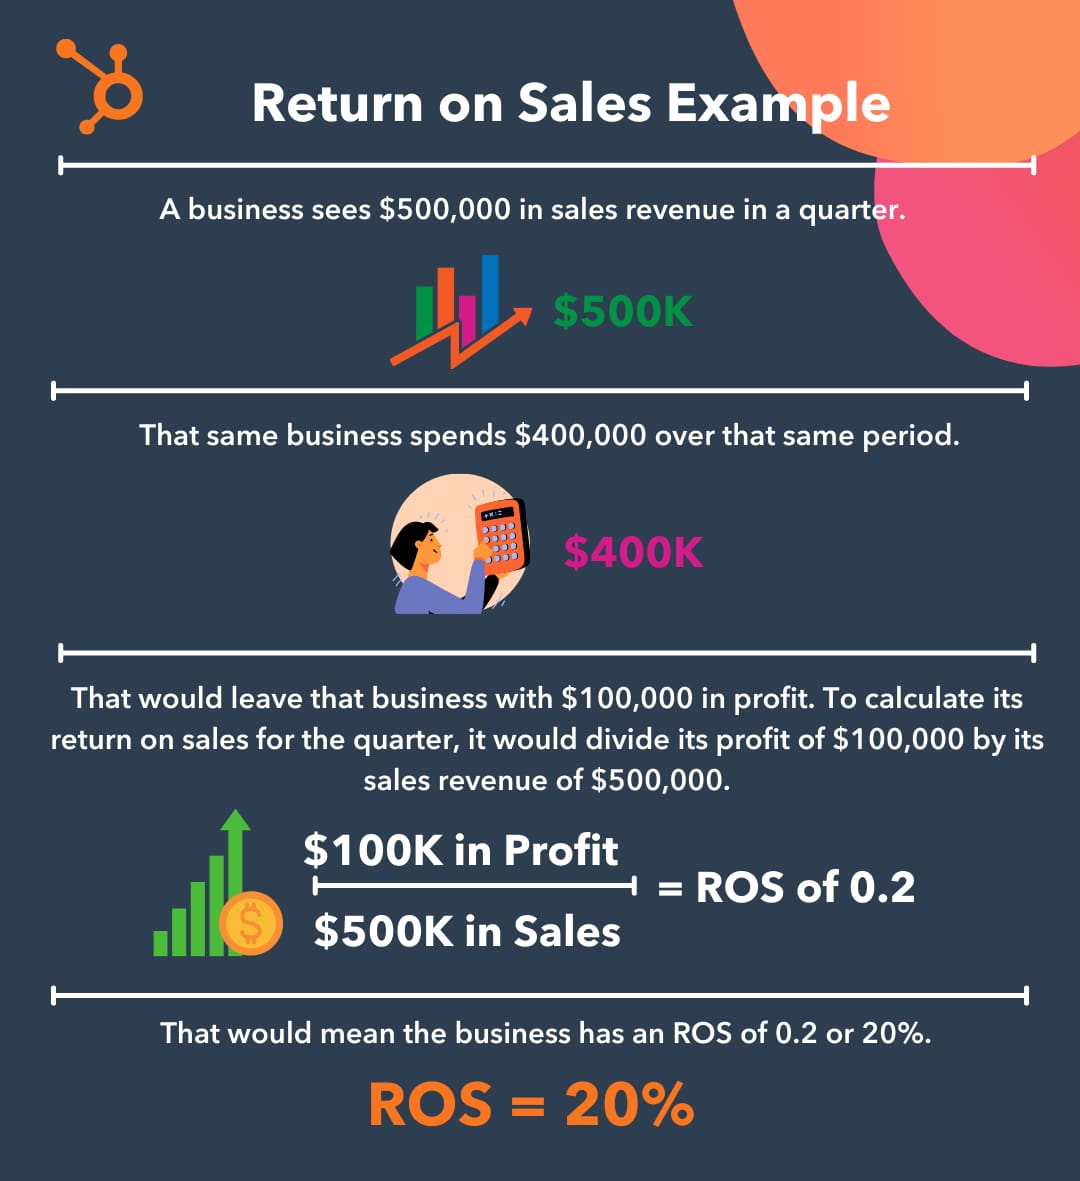 Return on Sales Example